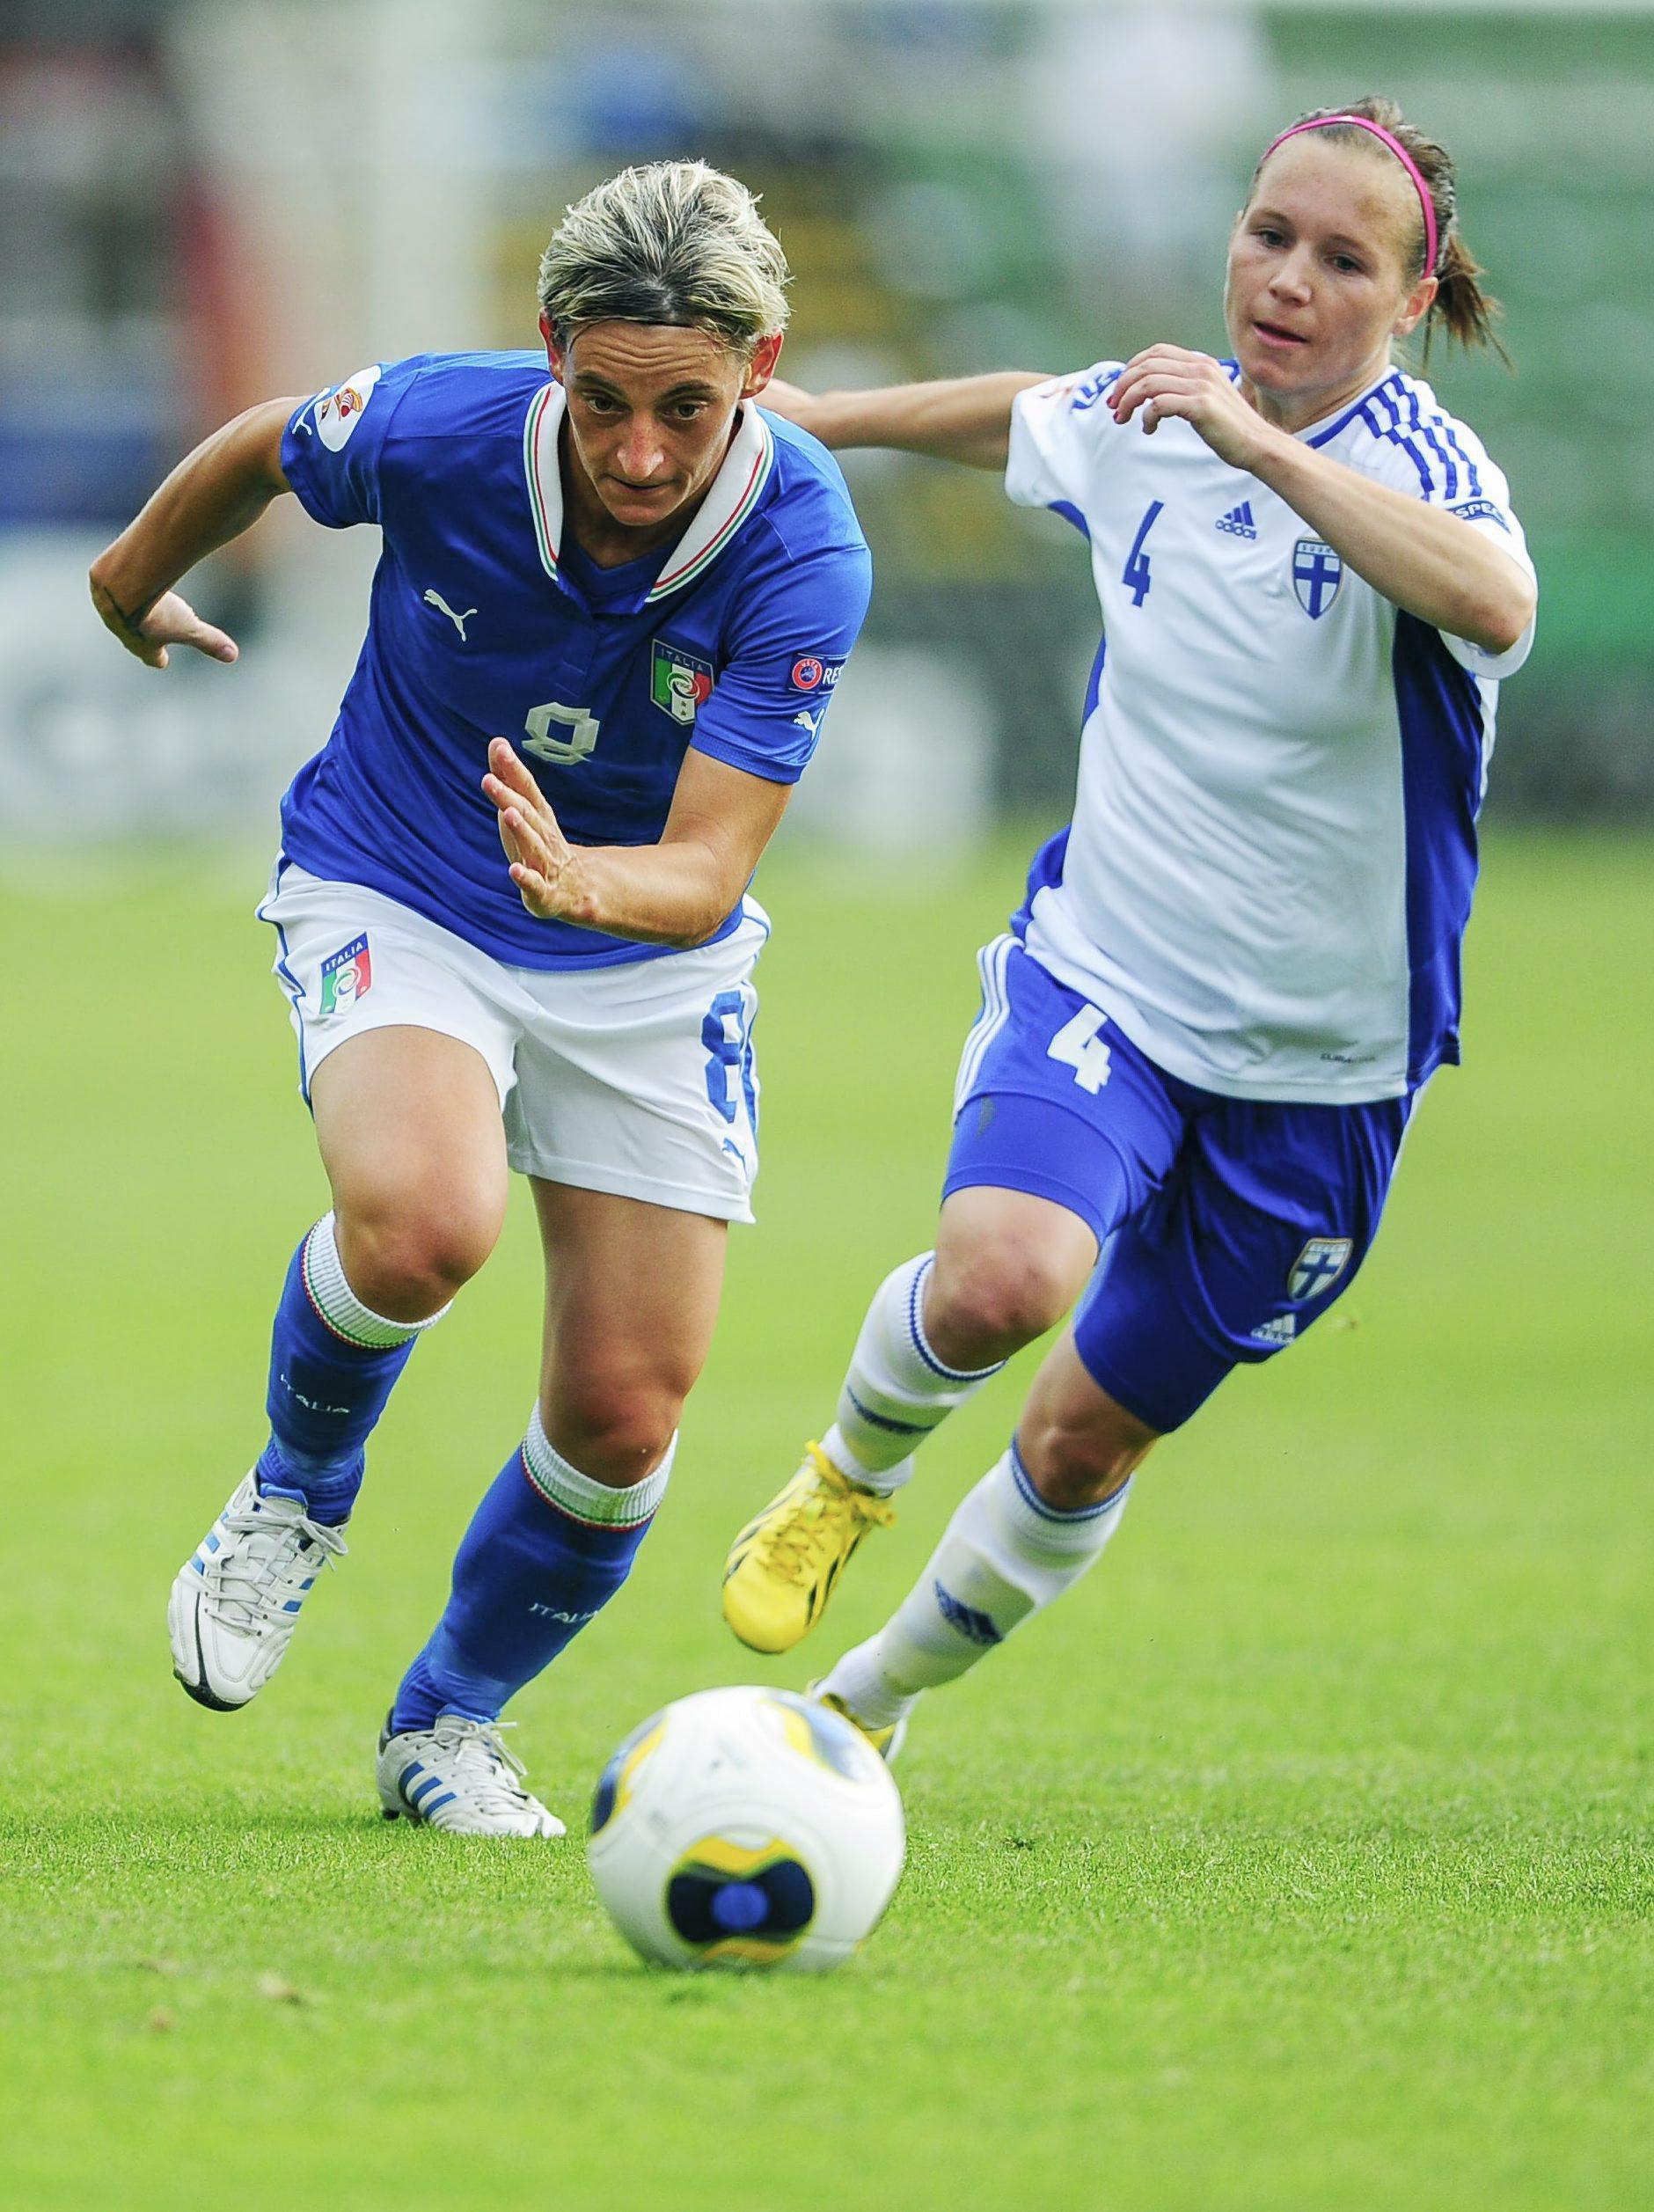 Calcio femminile: “L’Italia? È il brutto anatroccolo”